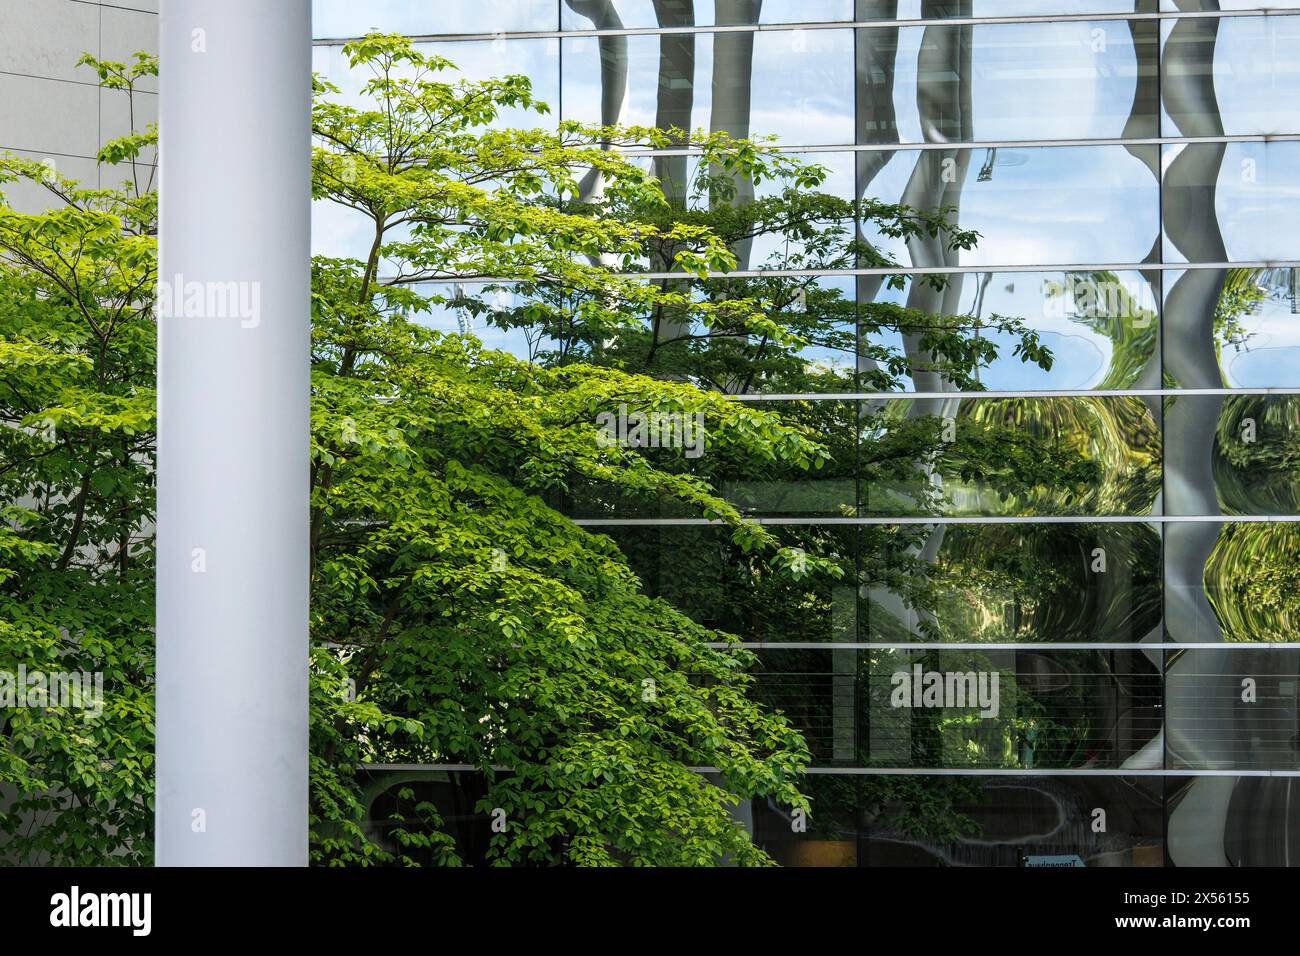 Arbres dans la cour intérieure d'un immeuble de bureaux et d'affaires à Mediapark, Cologne, Allemagne. Baeume stehen im Innenhof eines Buero- und Geschaeftsh Banque D'Images